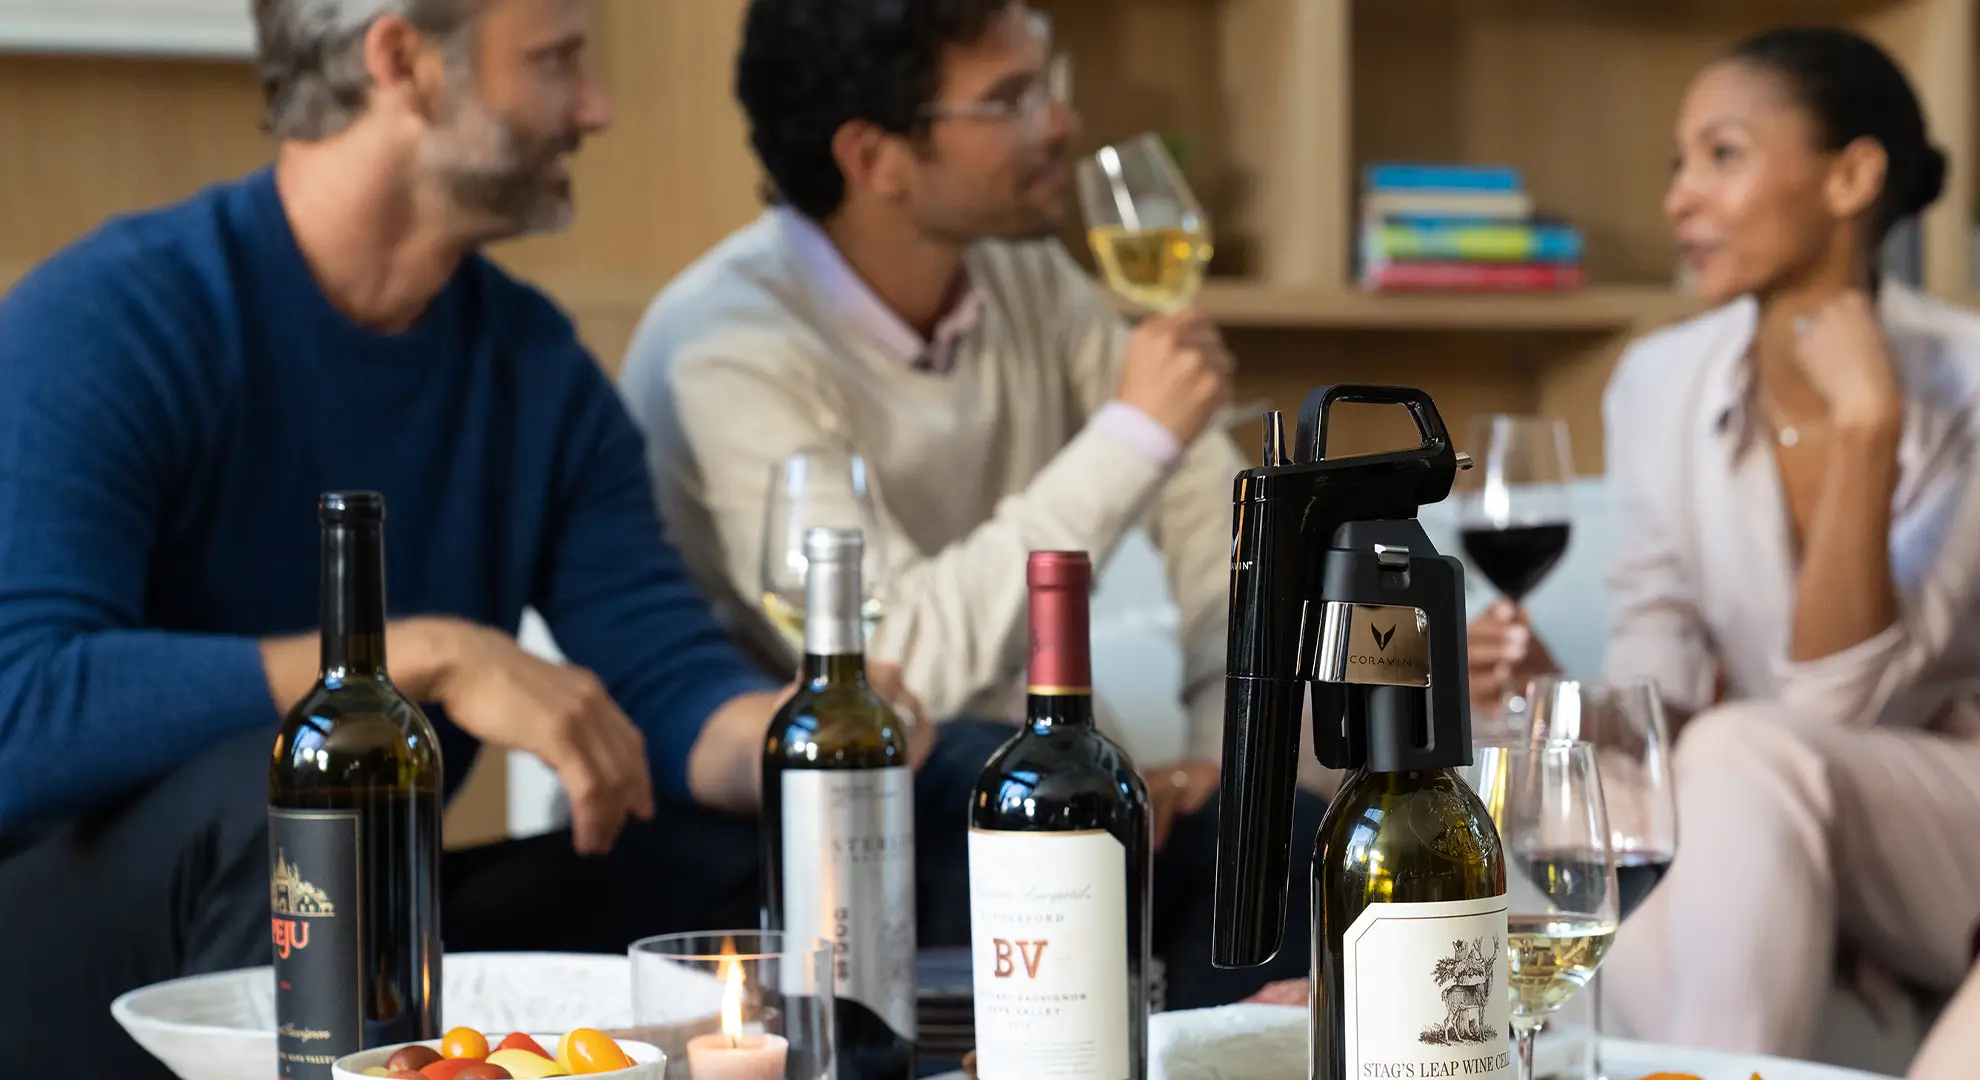 Vrienden die gezellig samen zijn in een huiskamer met wijn en charcuterie, met een Coravin-wijnbewaarsysteem.
